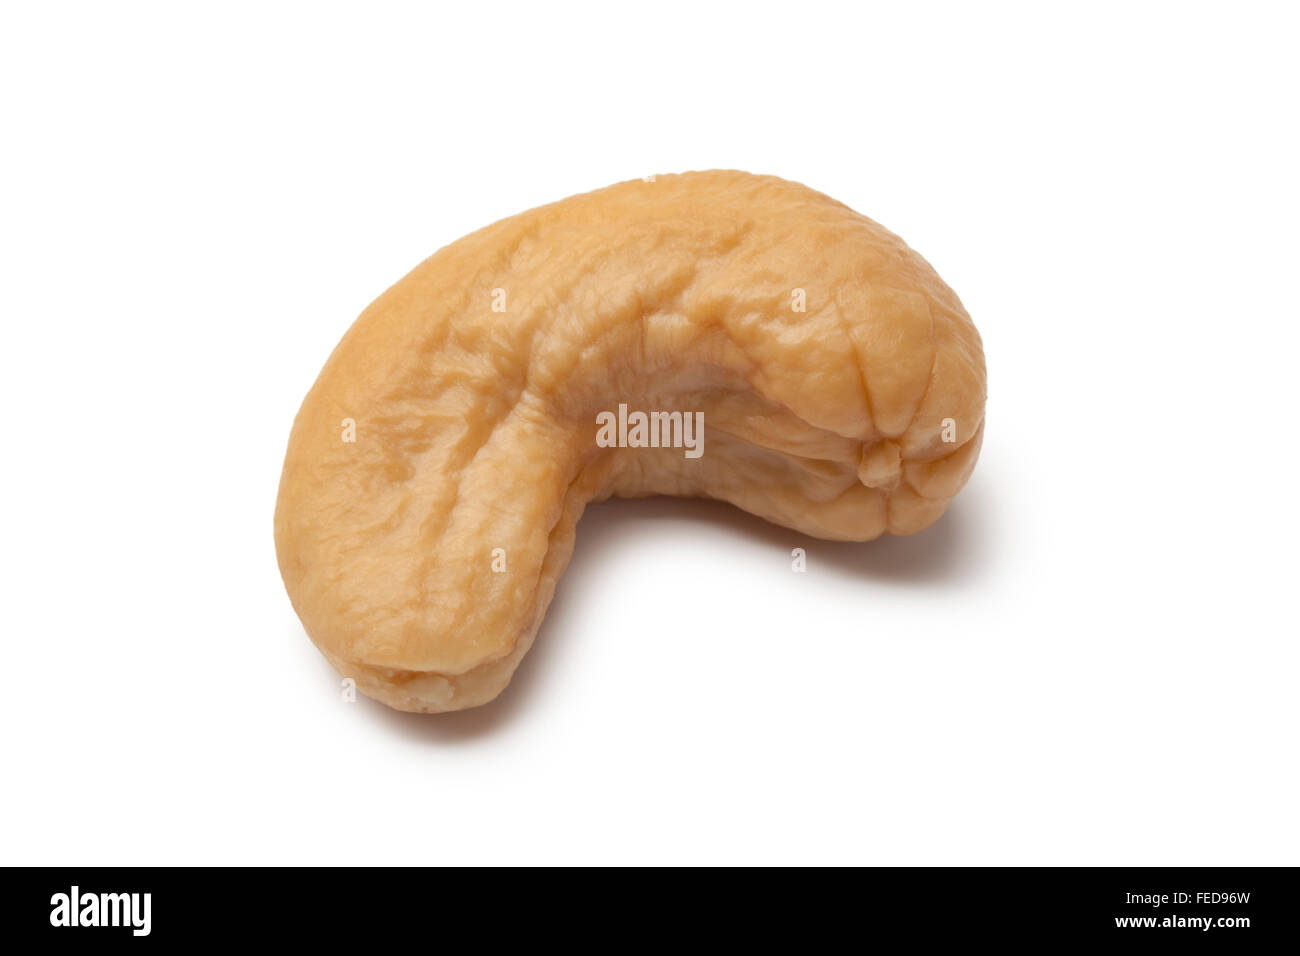 Single cashew nut on white background Stock Photo